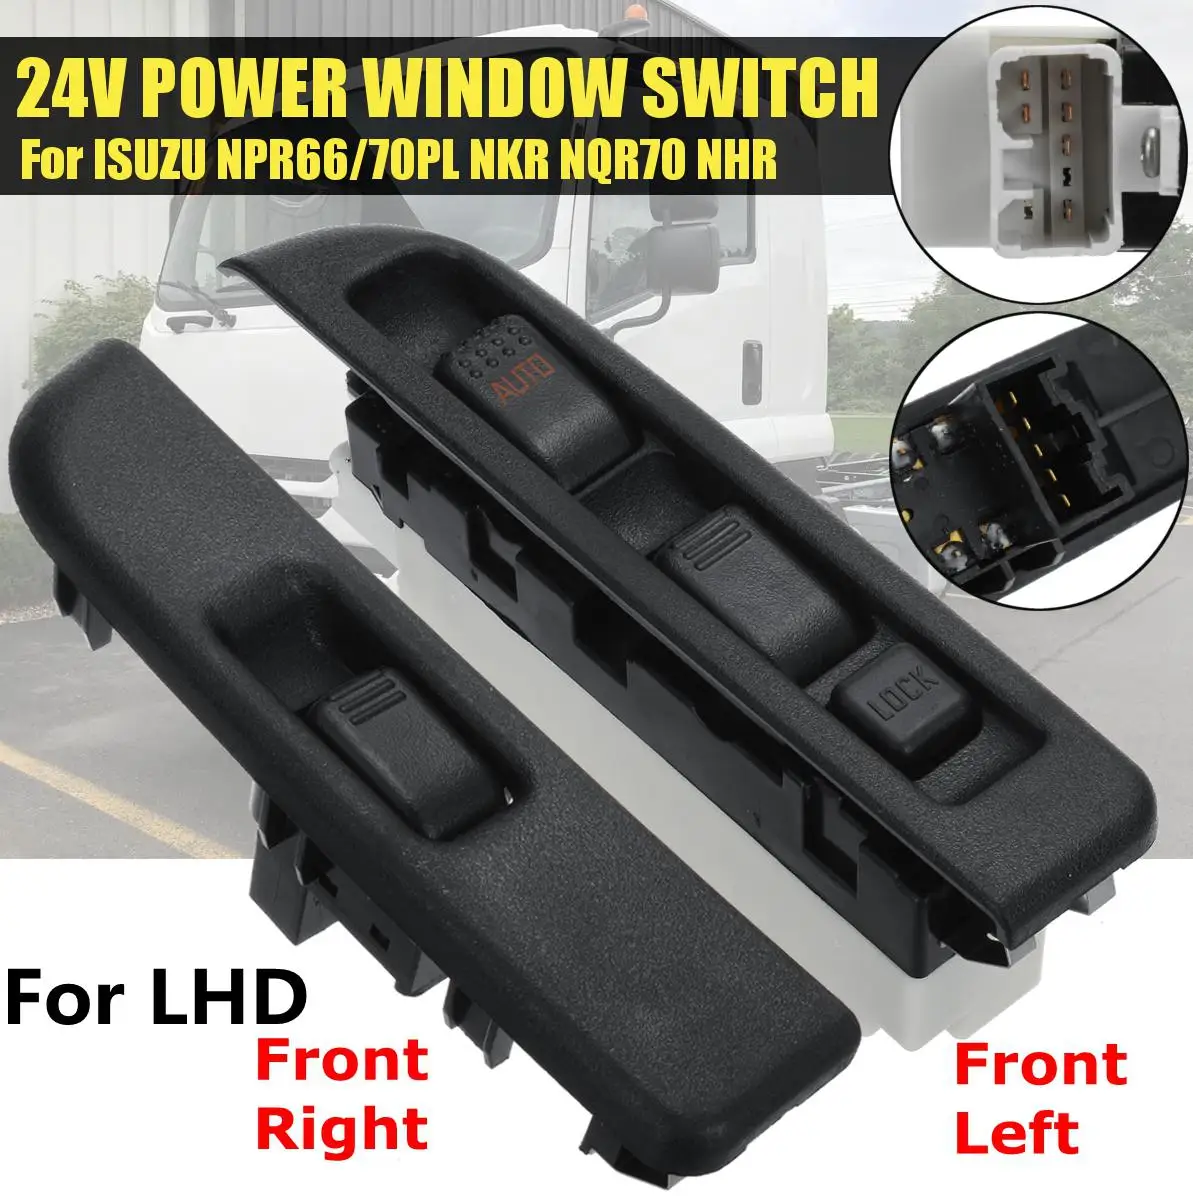 24 В переключатель стеклоподъемника для ISUZU NPR66/70PL NKR NQR70 NHR LHD или RHD пассажирский и драйвер передний левый/правый Электрический переключатель окна - Цвет: 3